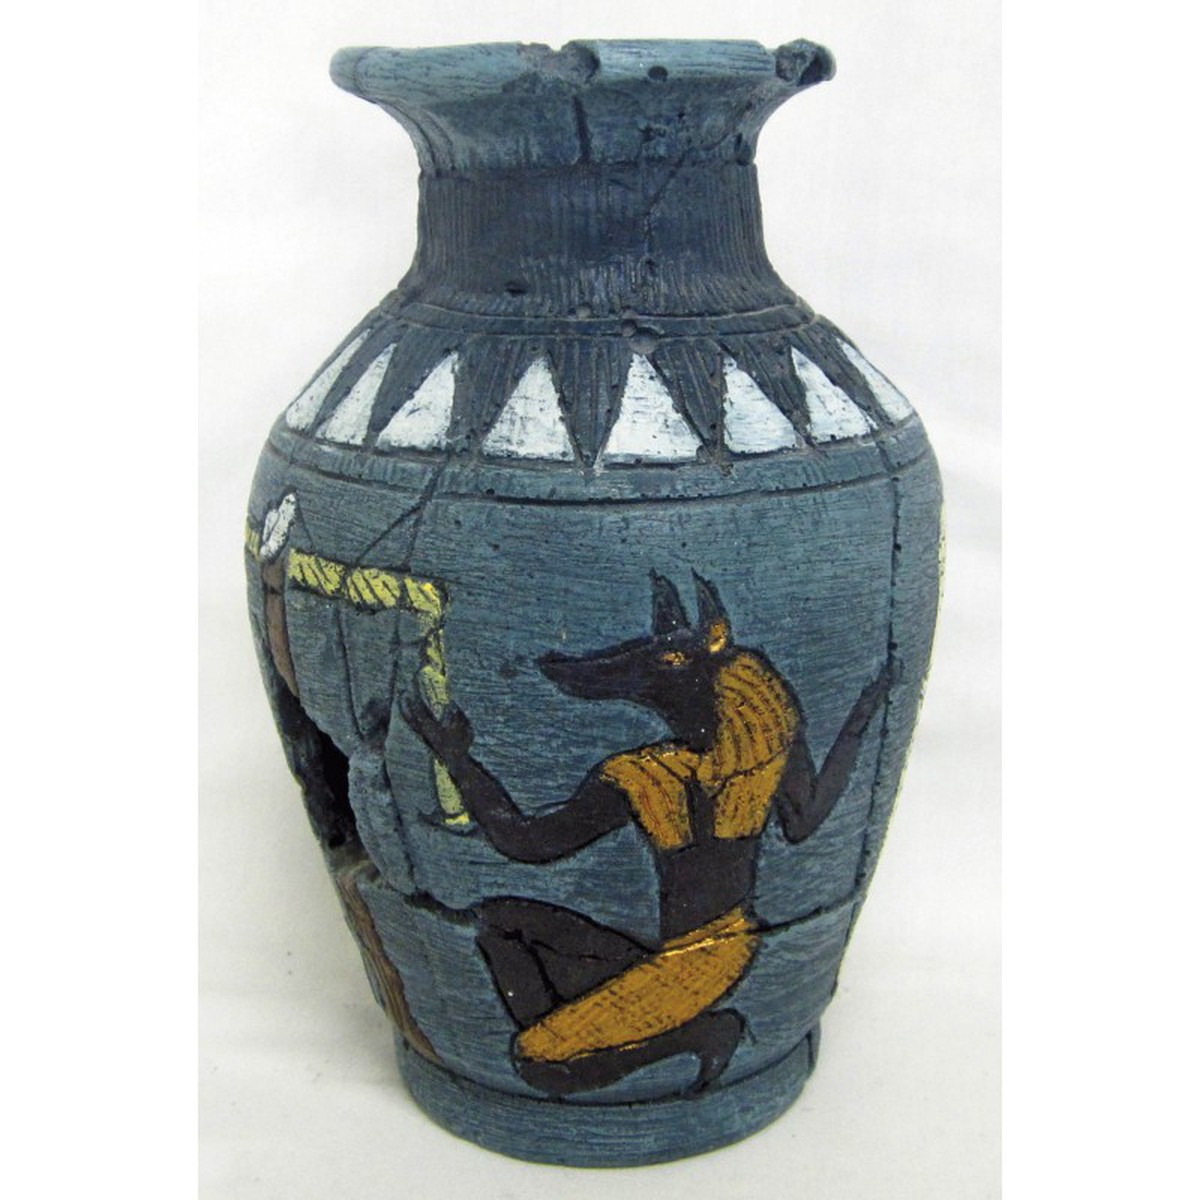   Décoration pour Aquarium  Vase égyptien Anubi  